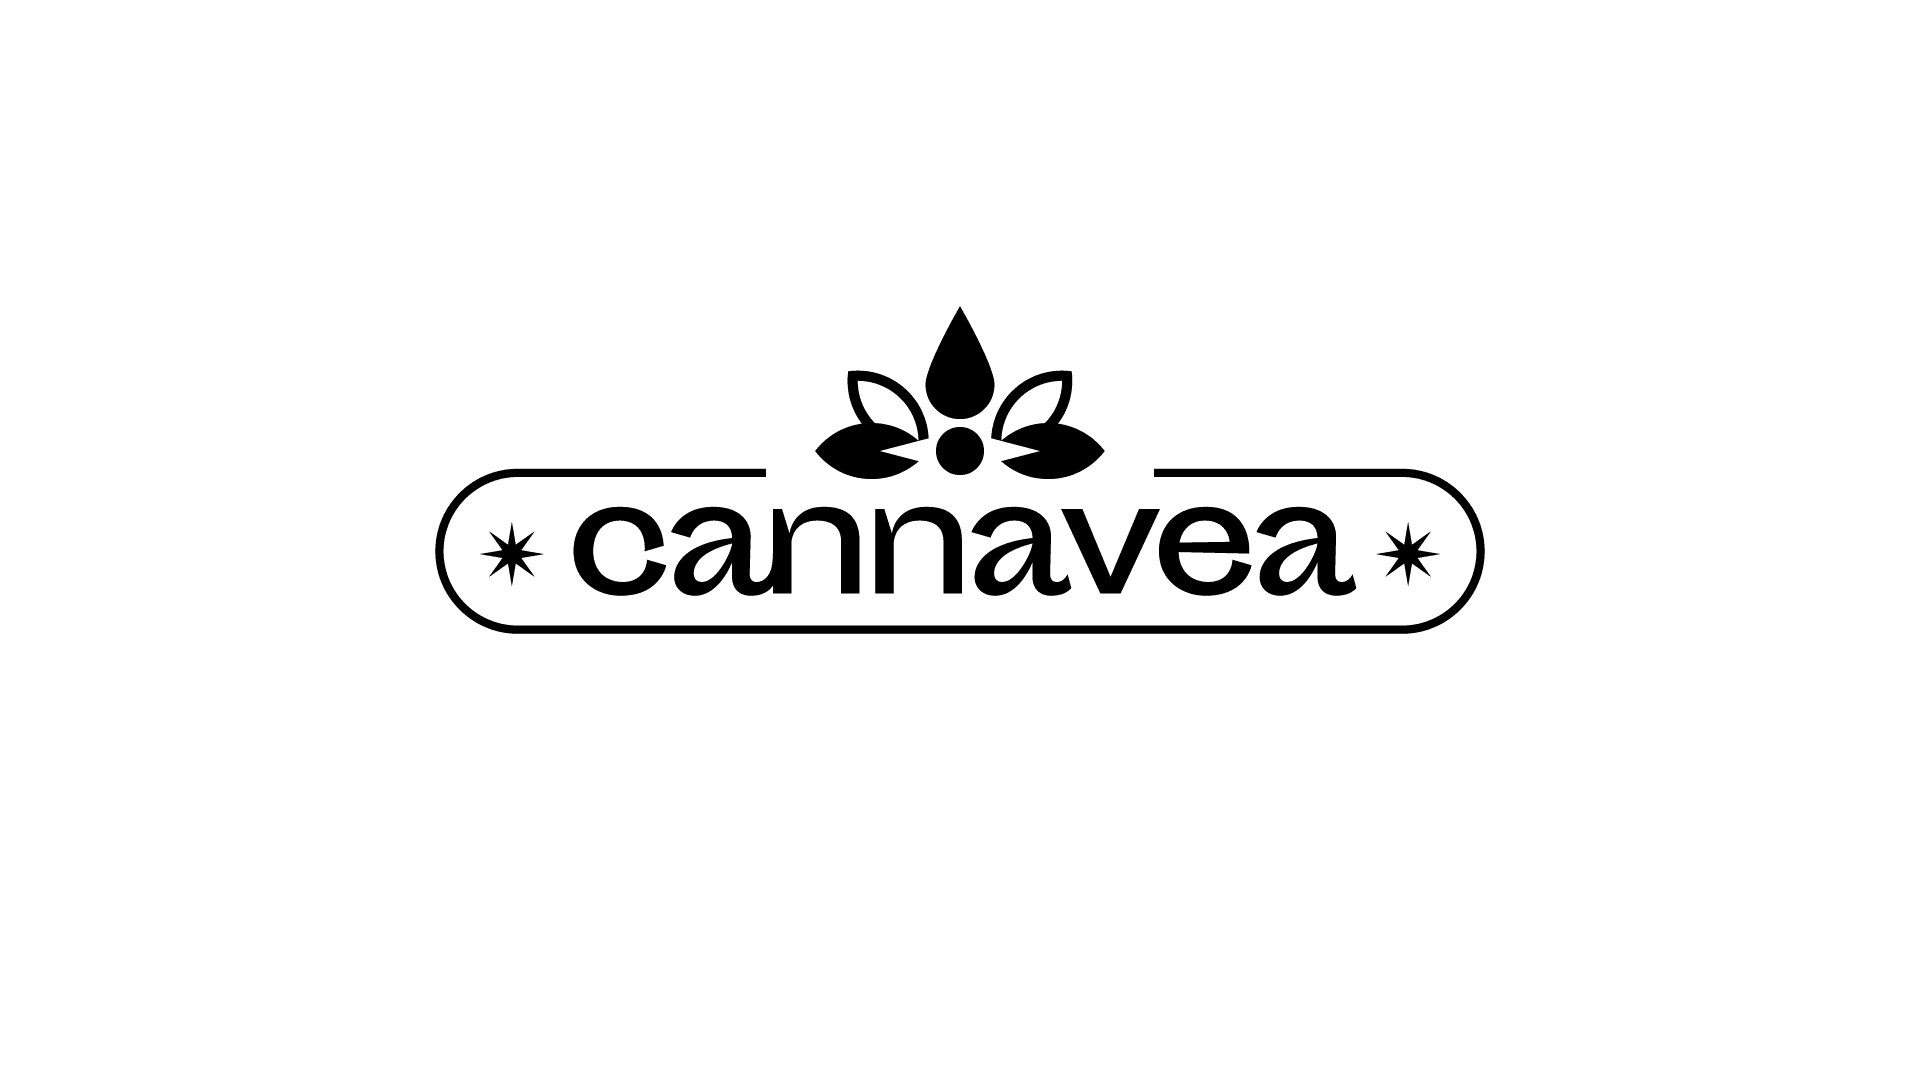 Cannavea